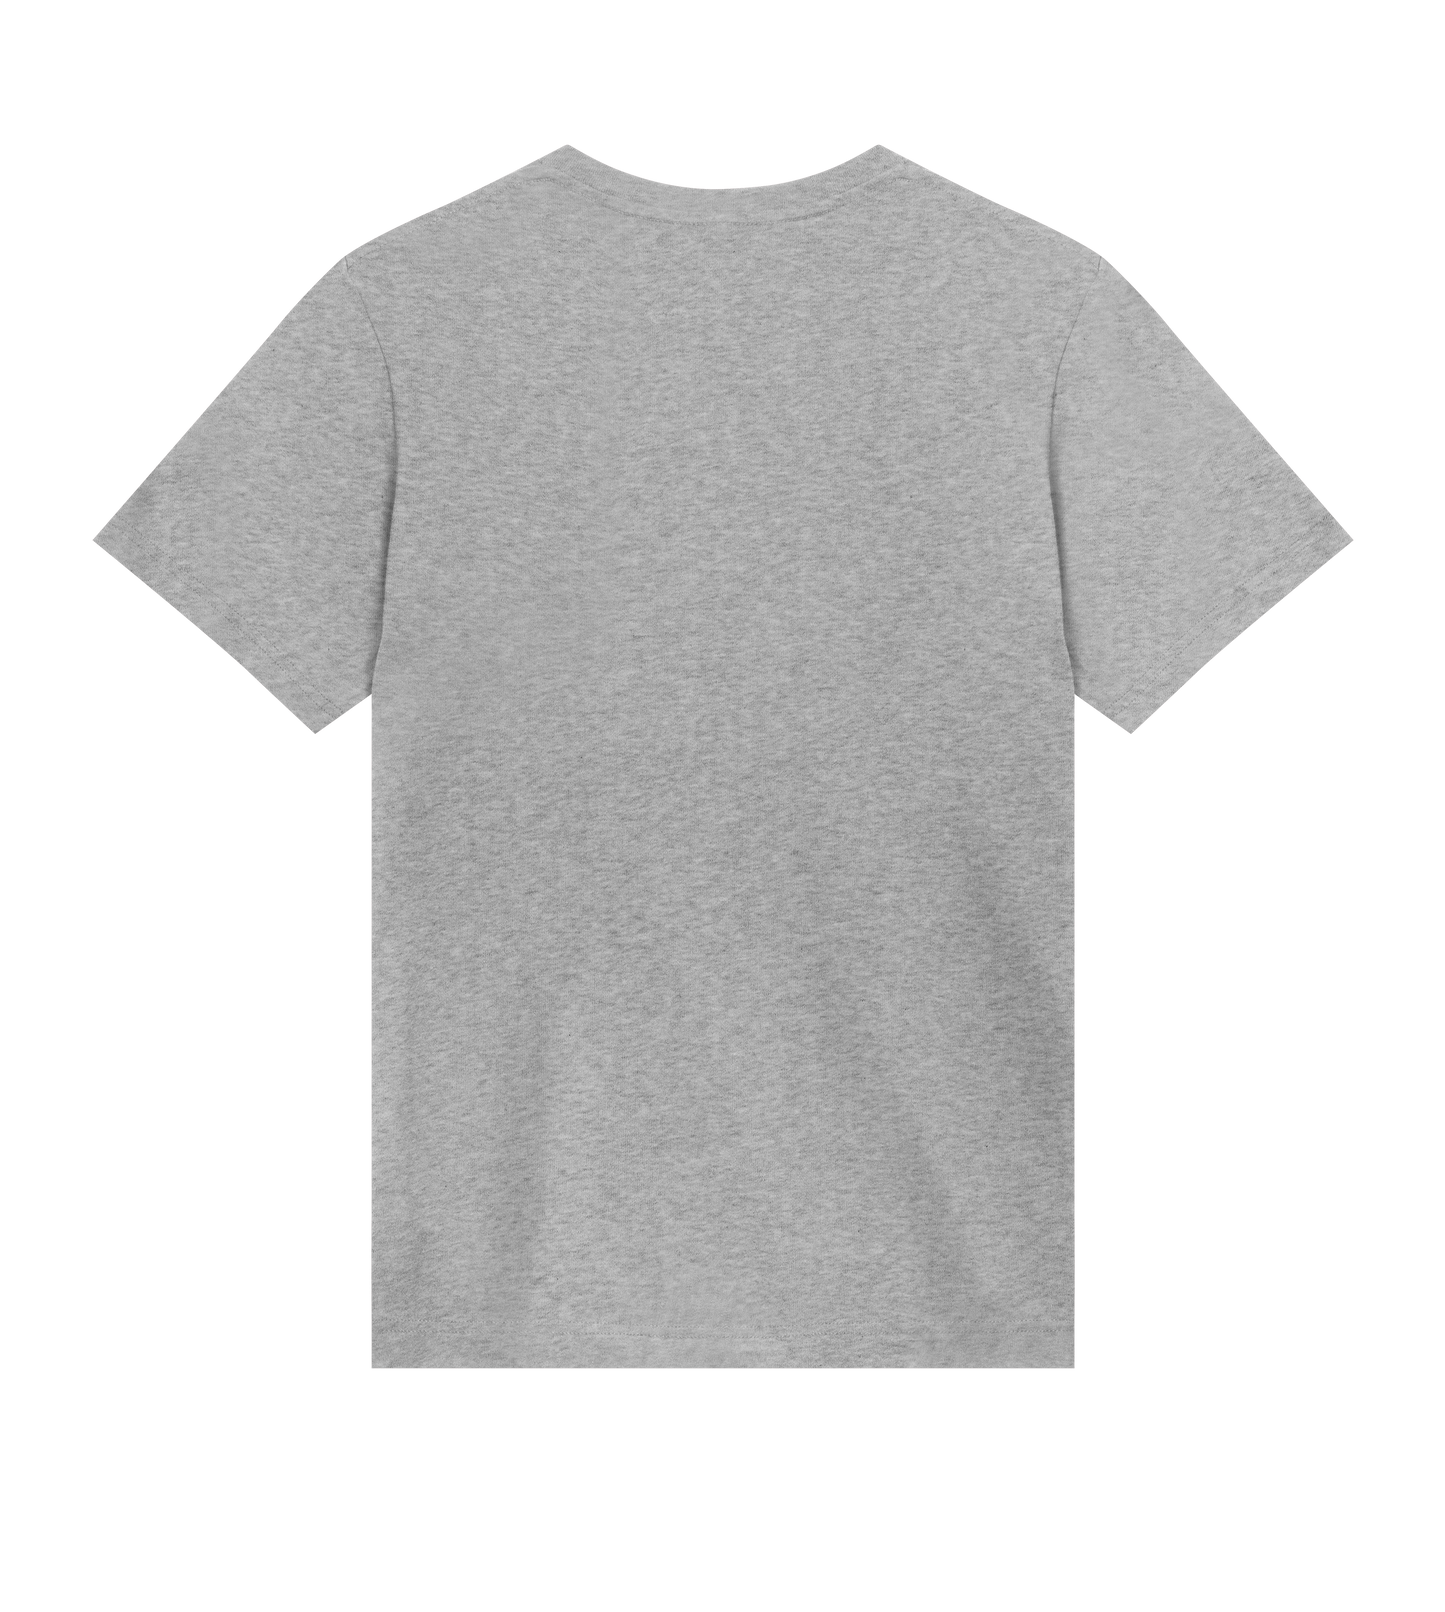 Nightshine - Black Logo Small, Mens T-shirt